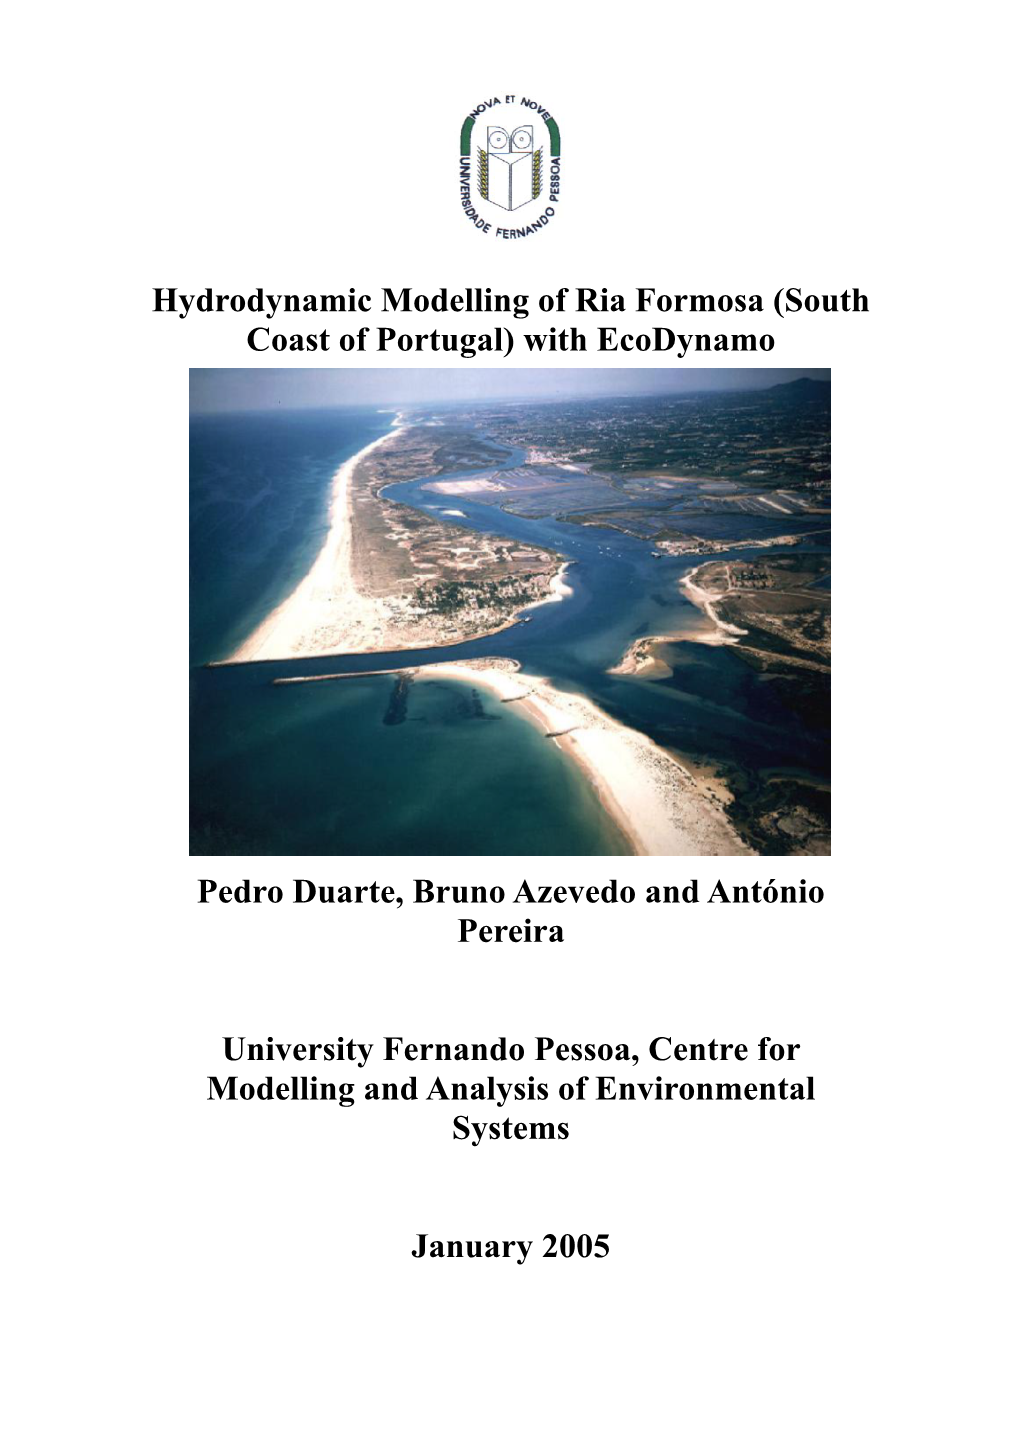 Hydrodynamic Modelling of Ria Formosa (South Coast of Portugal) with Ecodynamo